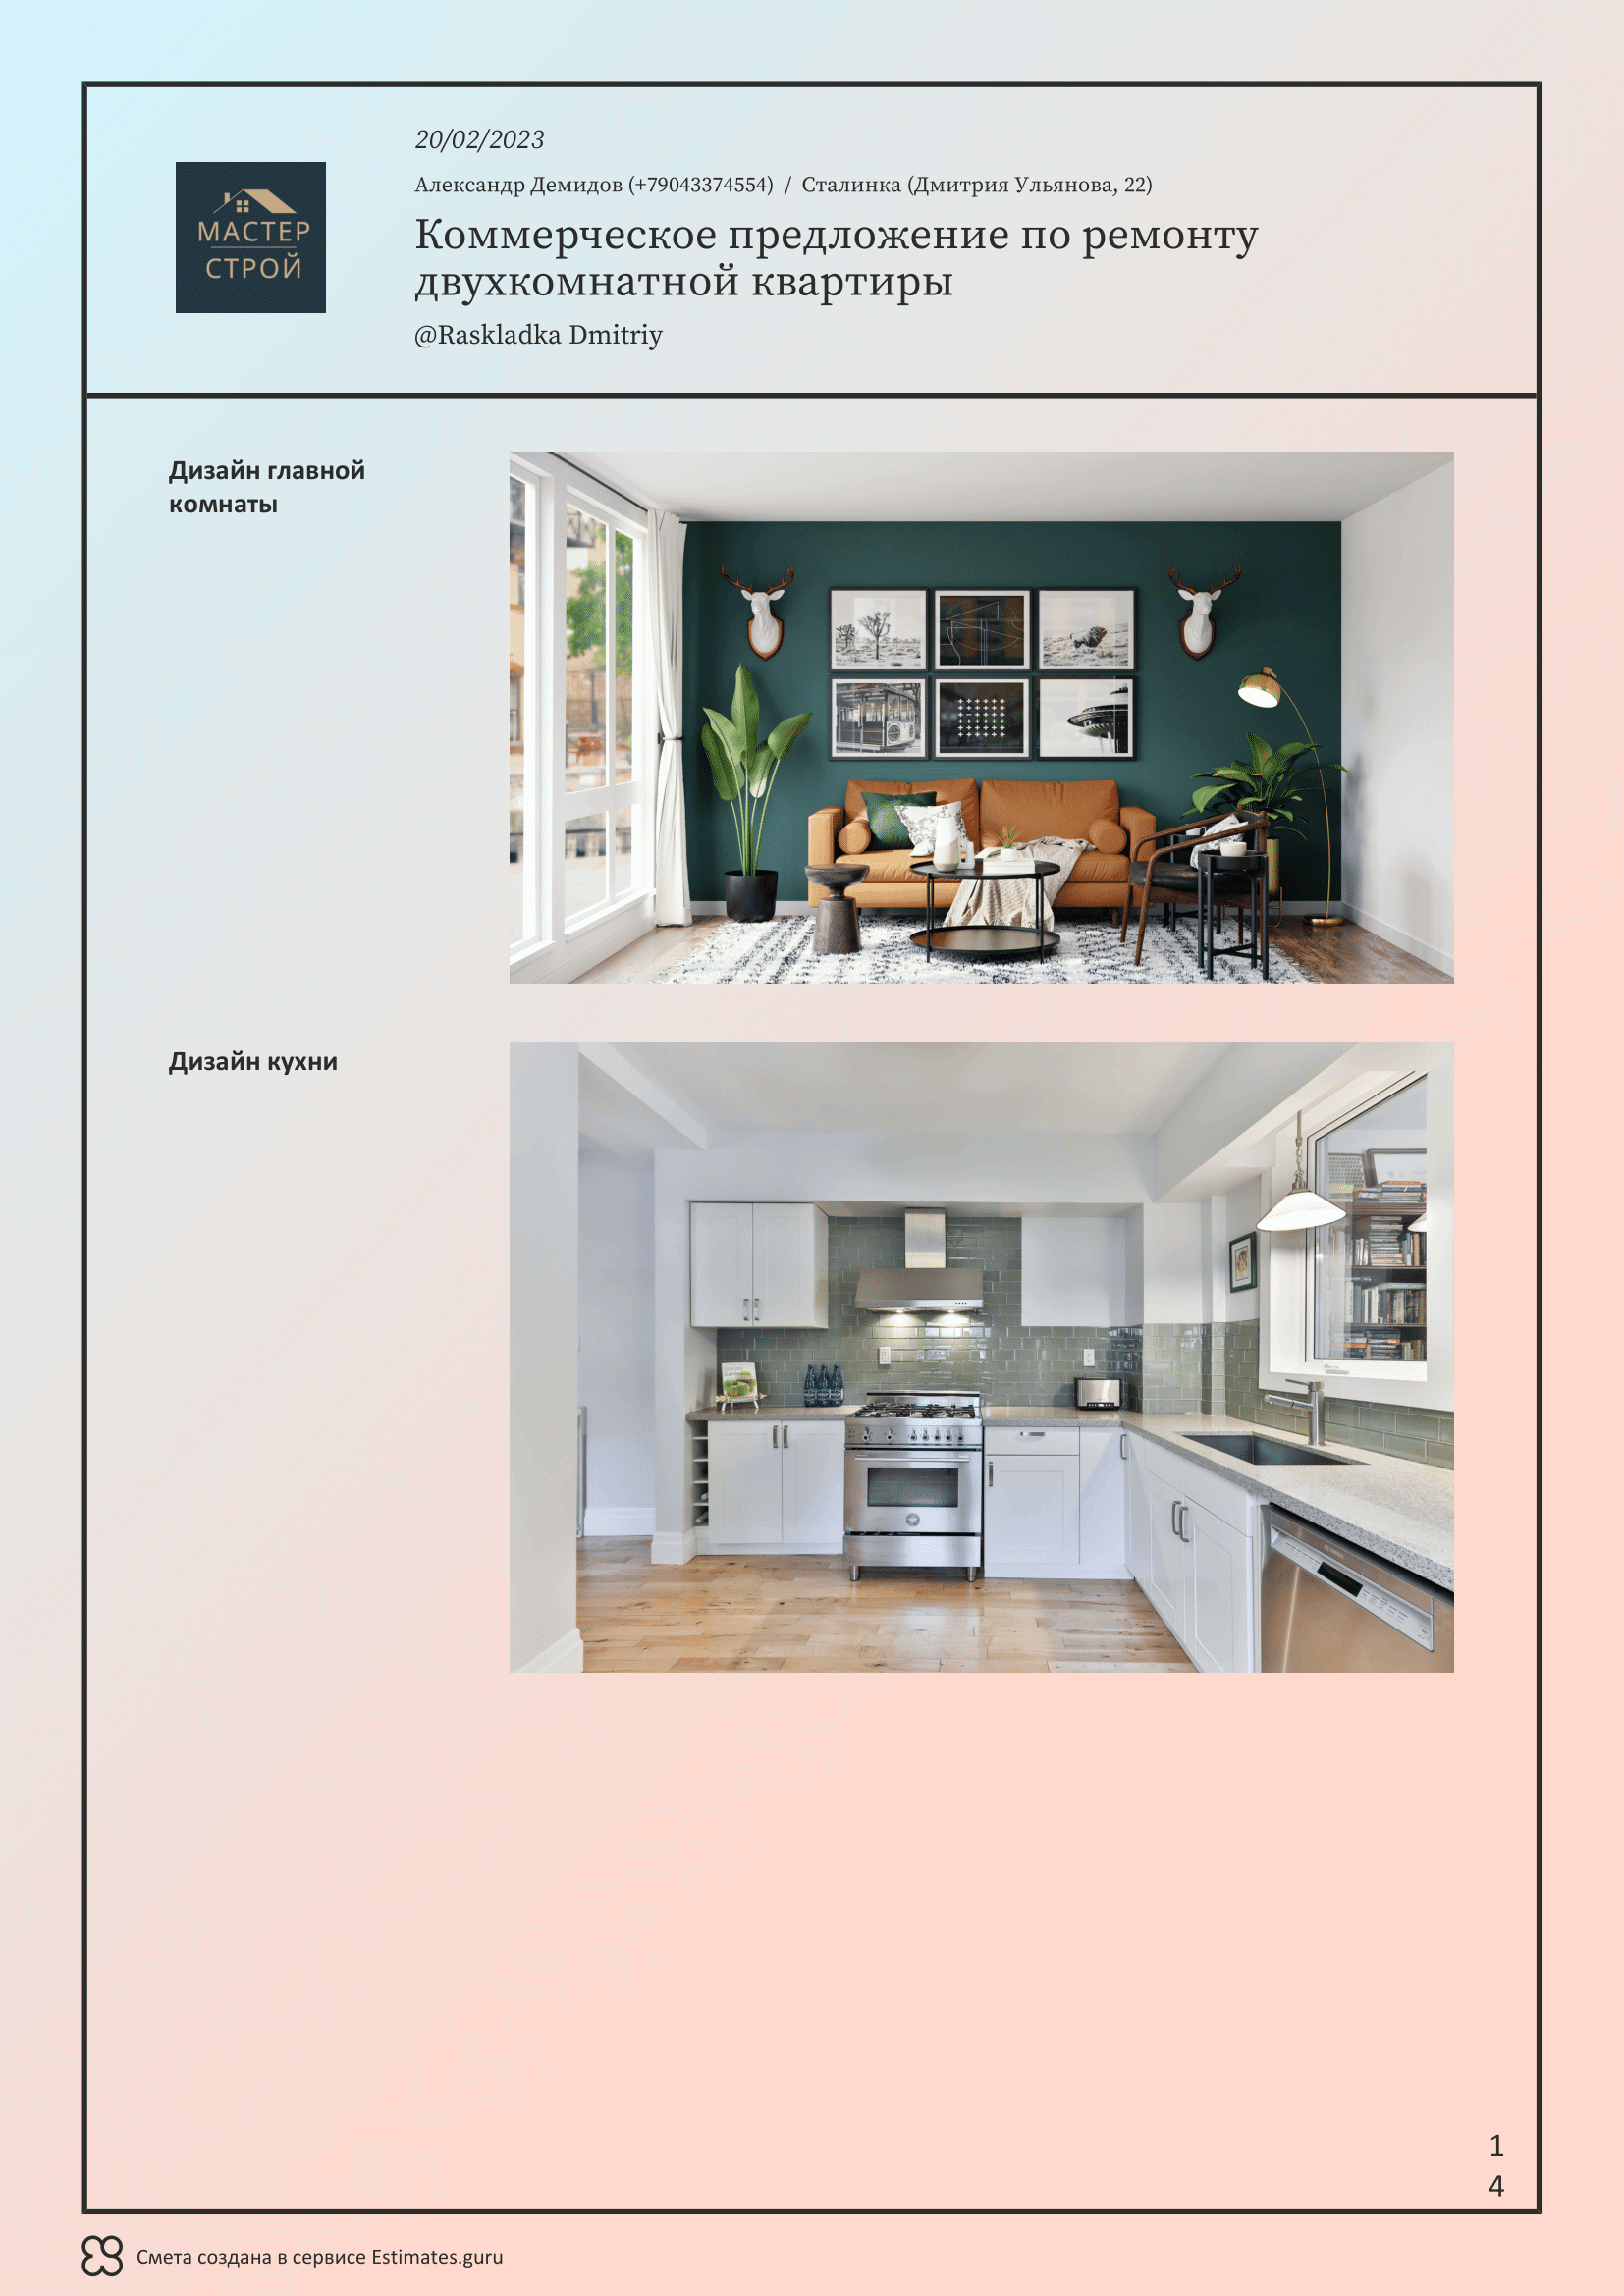 Коммерческое предложение, образец на ремонт двухкомнатной квартиры с изображениями | Estimates.guru